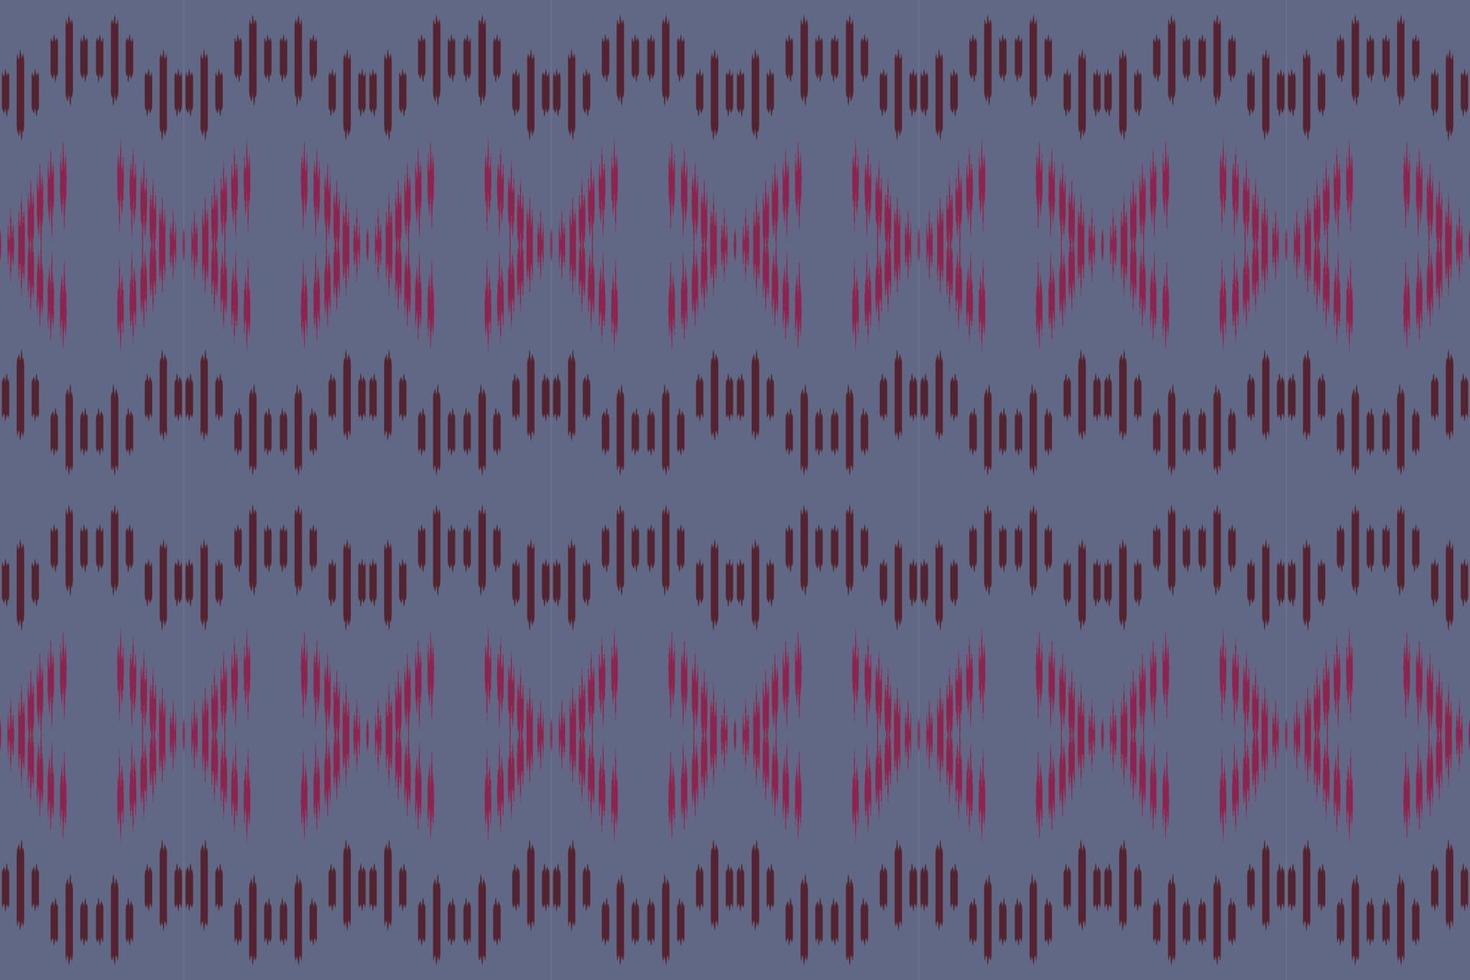 motivo ikat fundos tribais astecas bornéu batik escandinavo textura boêmia design de vetor digital para impressão saree kurti tecido pincel símbolos amostras